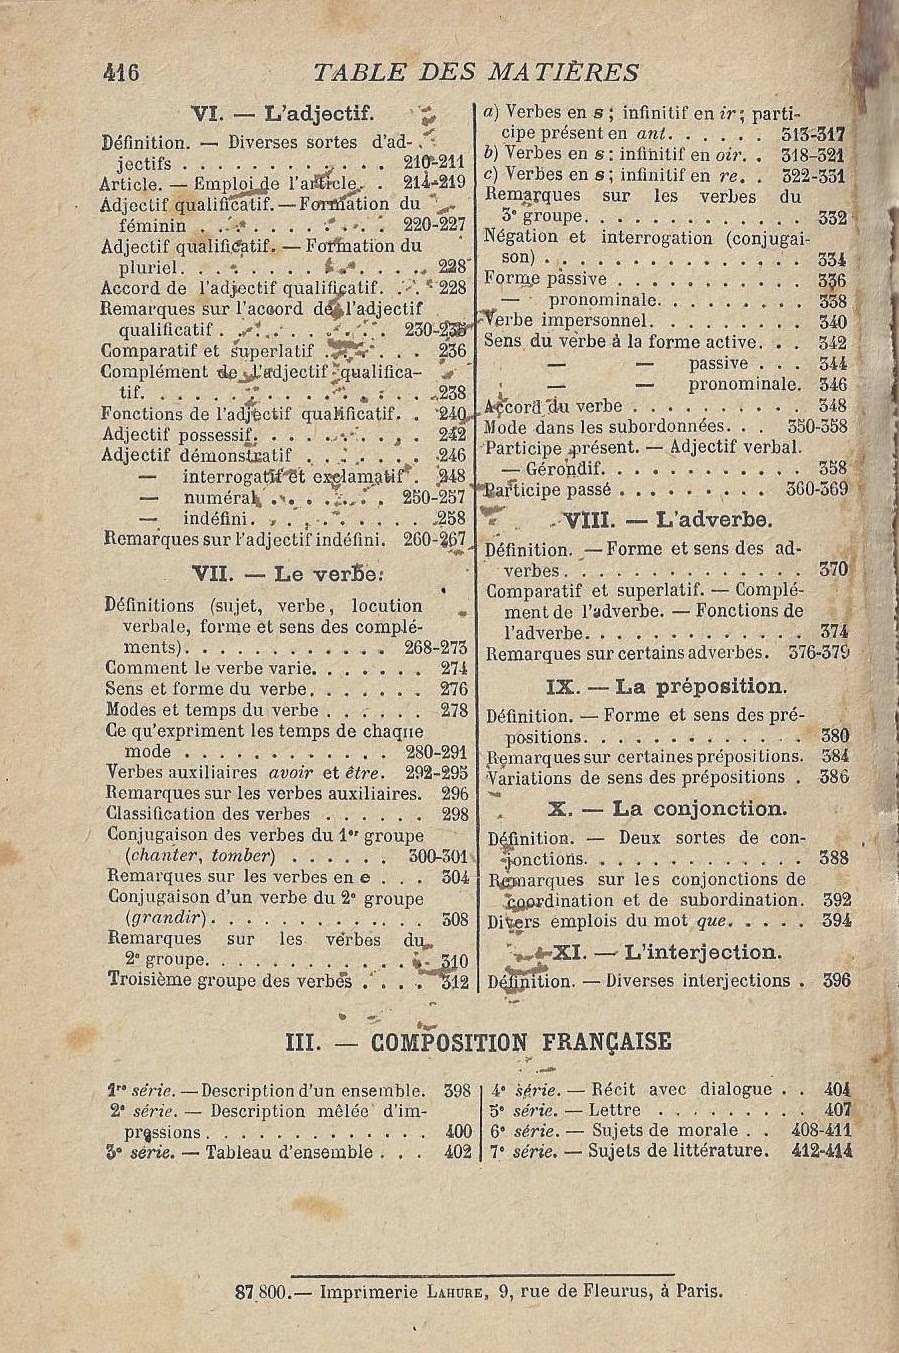 Avez-vous des livres de grammaire française "traditionnelle" à suggérer? - Page 3 Maquet+Flot+Roy+Cours+de+langue+fran%25C3%25A7aise+cs+cm0210